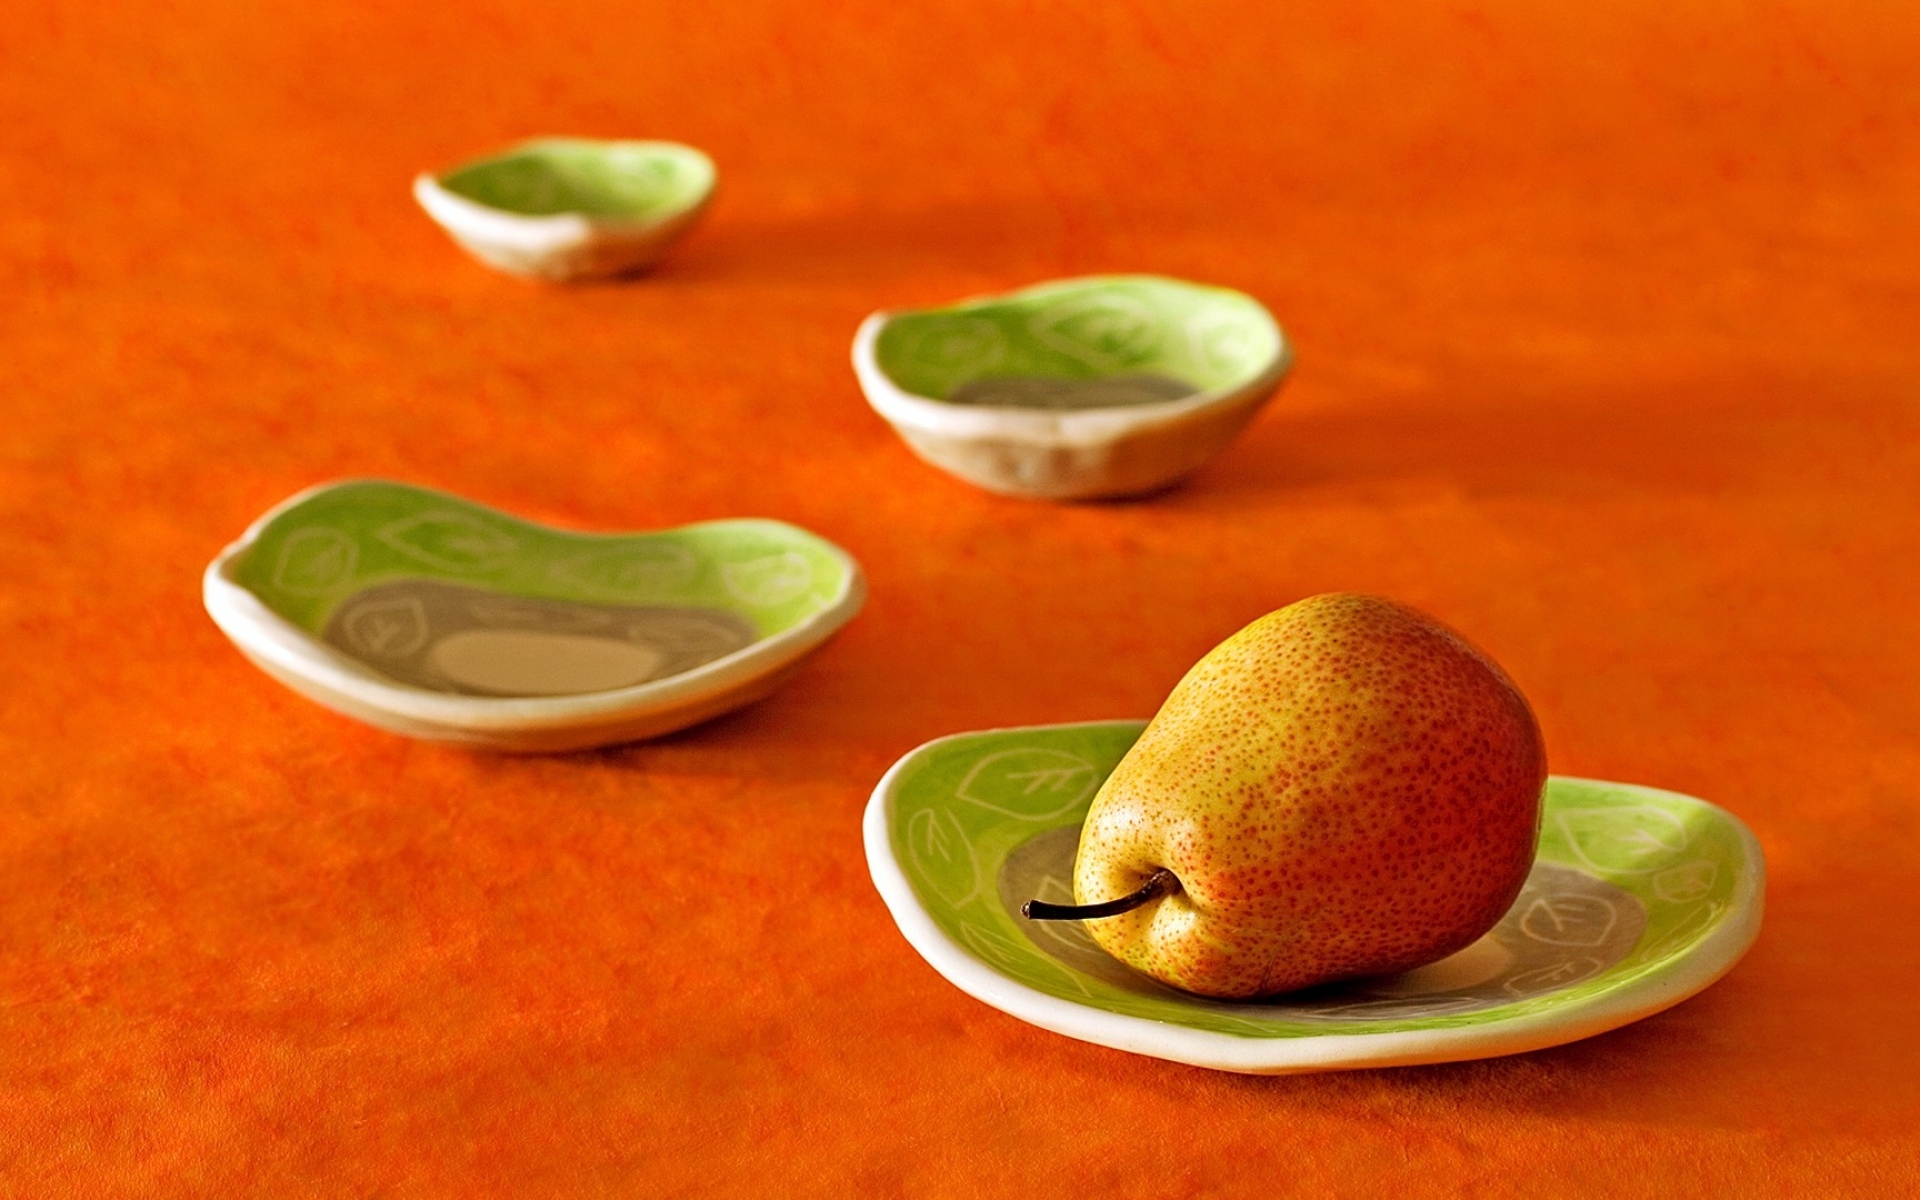 Картинки Груша, тарелки, фрукты, апельсин фото и обои на рабочий стол